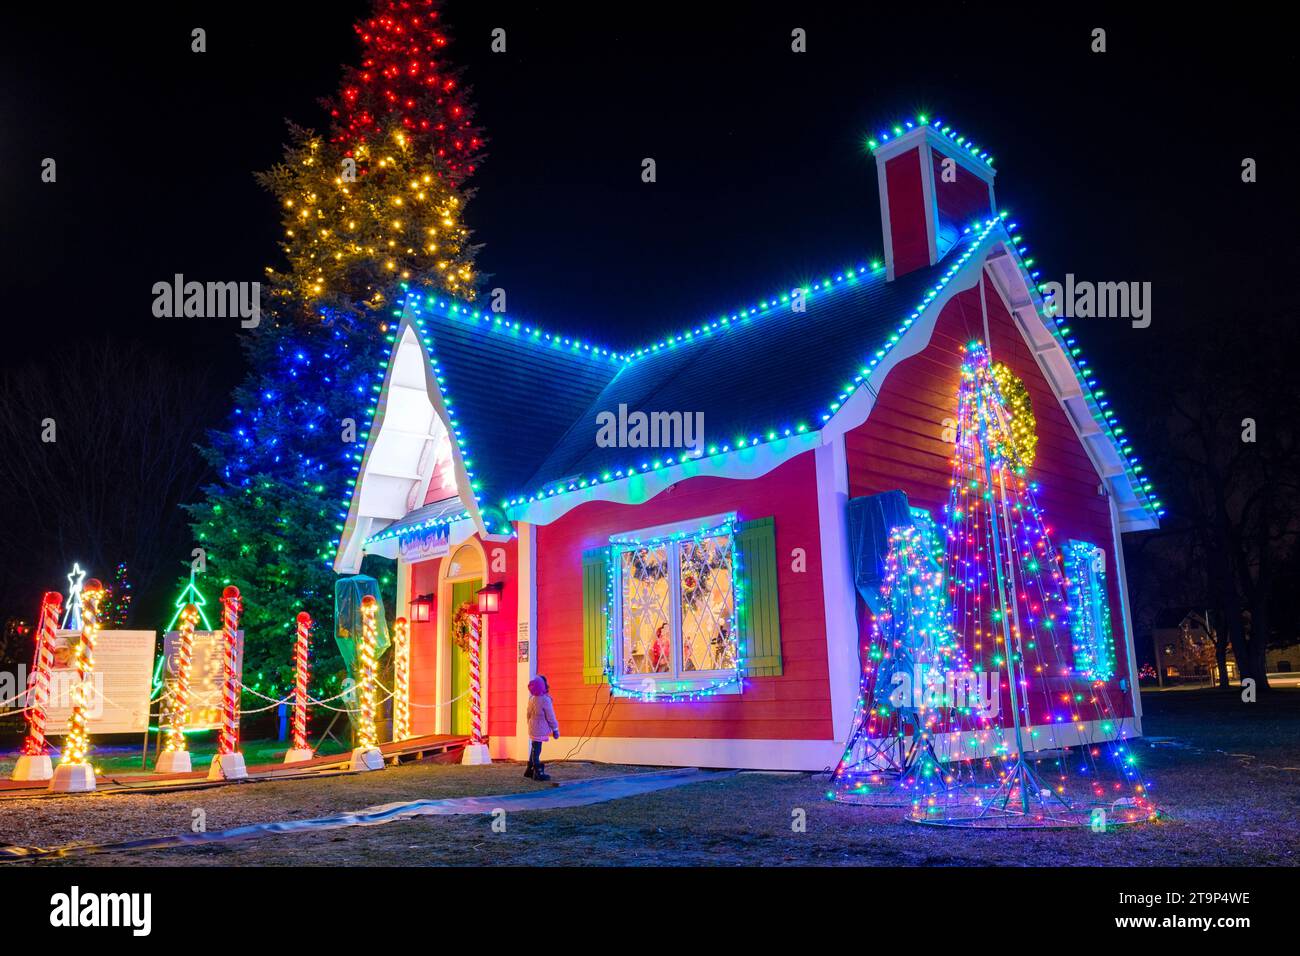 Decorazioni natalizie, scena natalizia, bambino fuori casa di Babbo Natale, giorno di Natale, albero di Natale all'aperto con luci natalizie Foto Stock